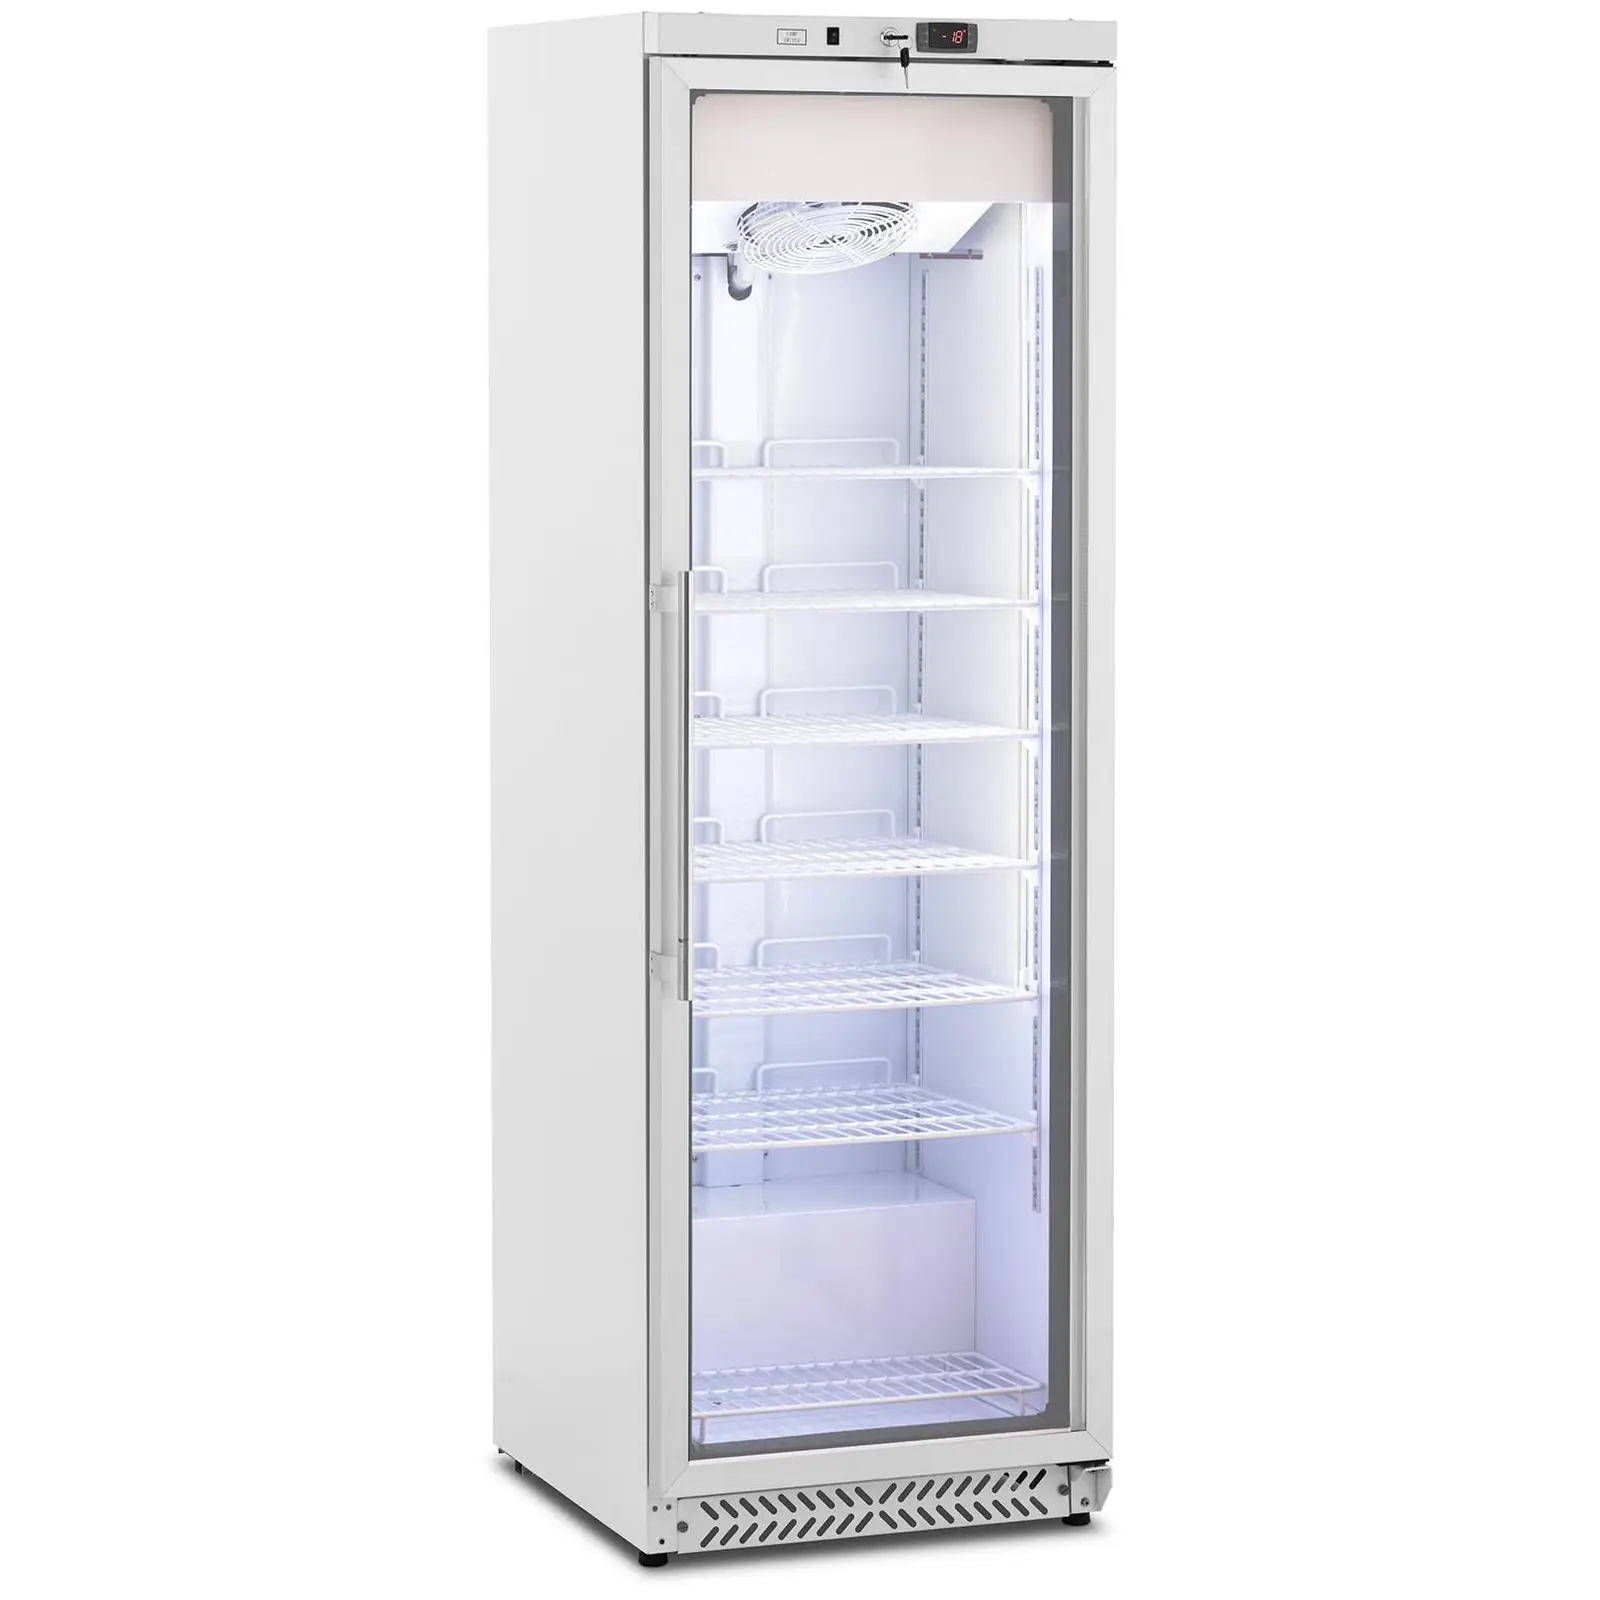 Zamrażarka szufladowa - 380 l - Royal Catering - szklane drzwi - biała - czynnik chłodniczy R290